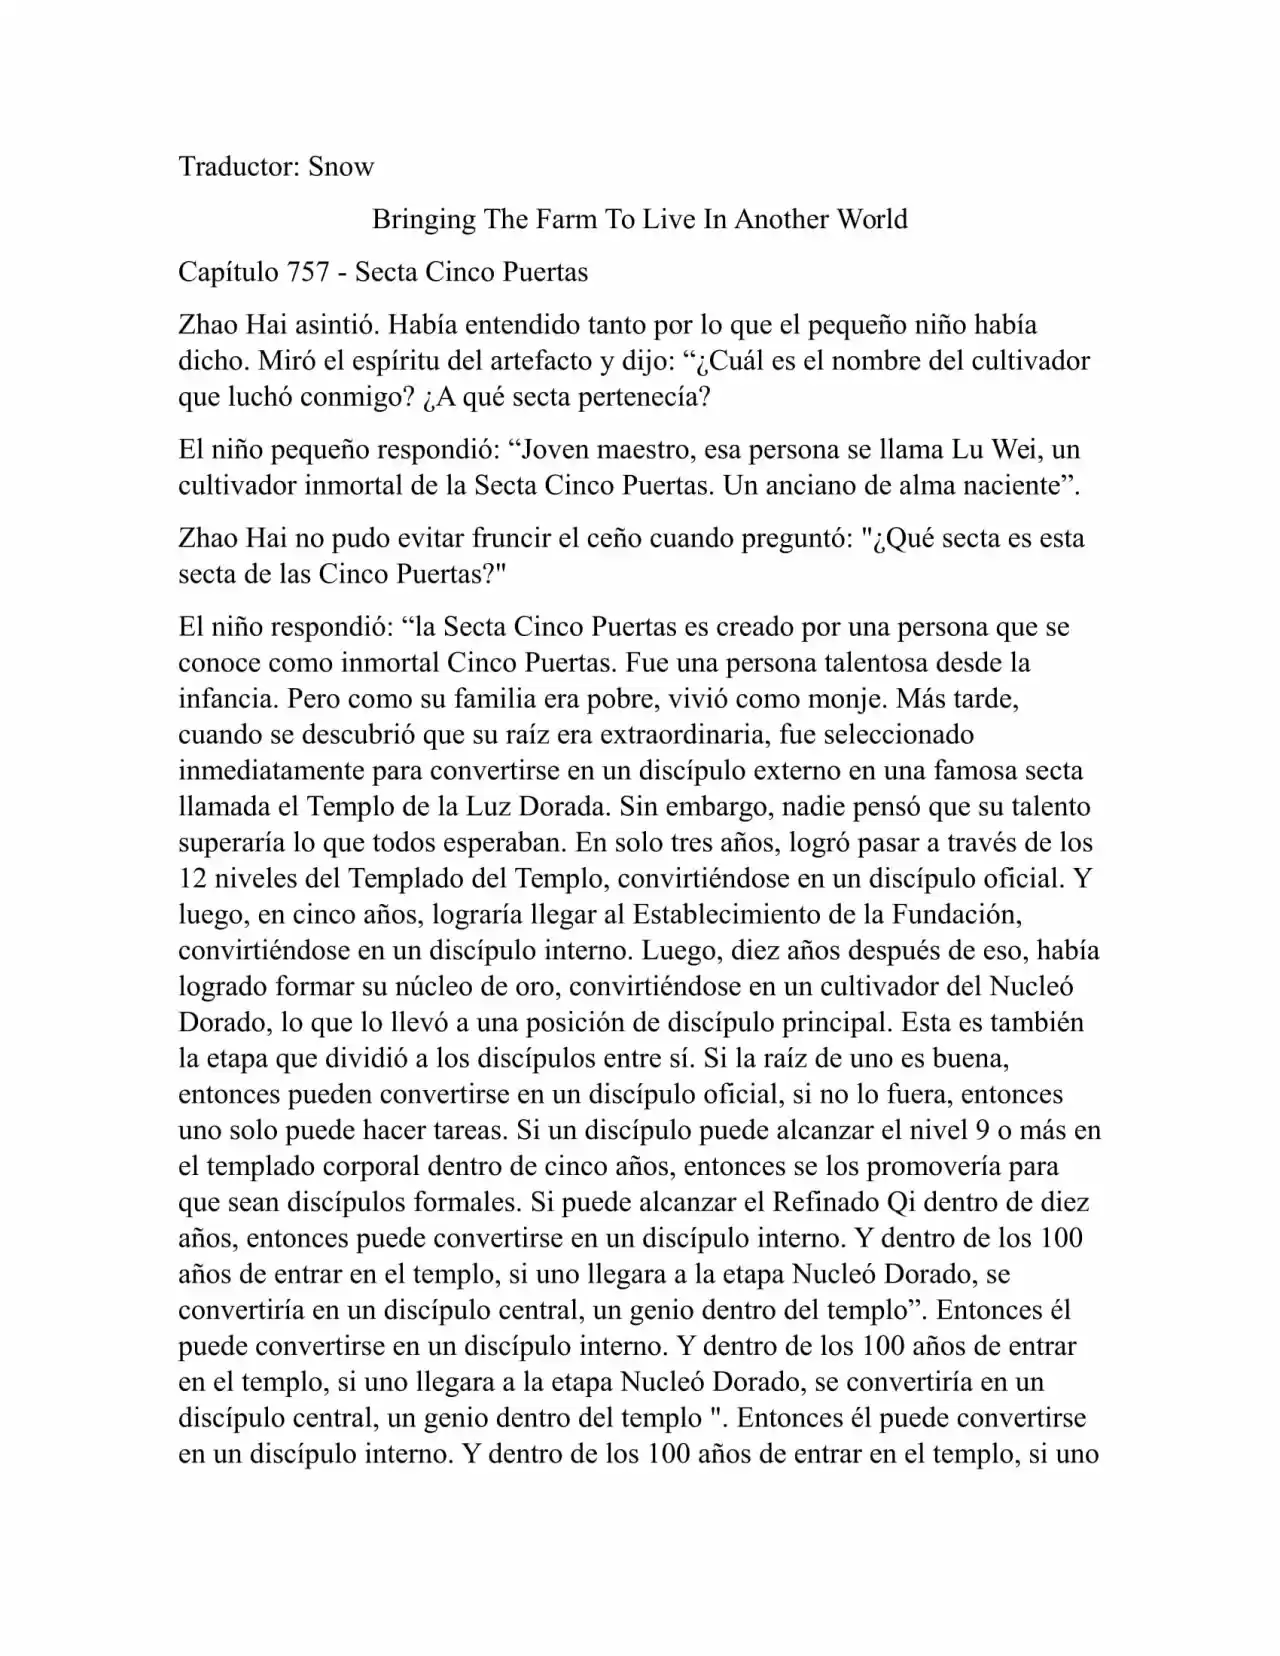 Llevando La Granja Para Vivir En Otro Mundo (Novela: Chapter 757 - Page 1